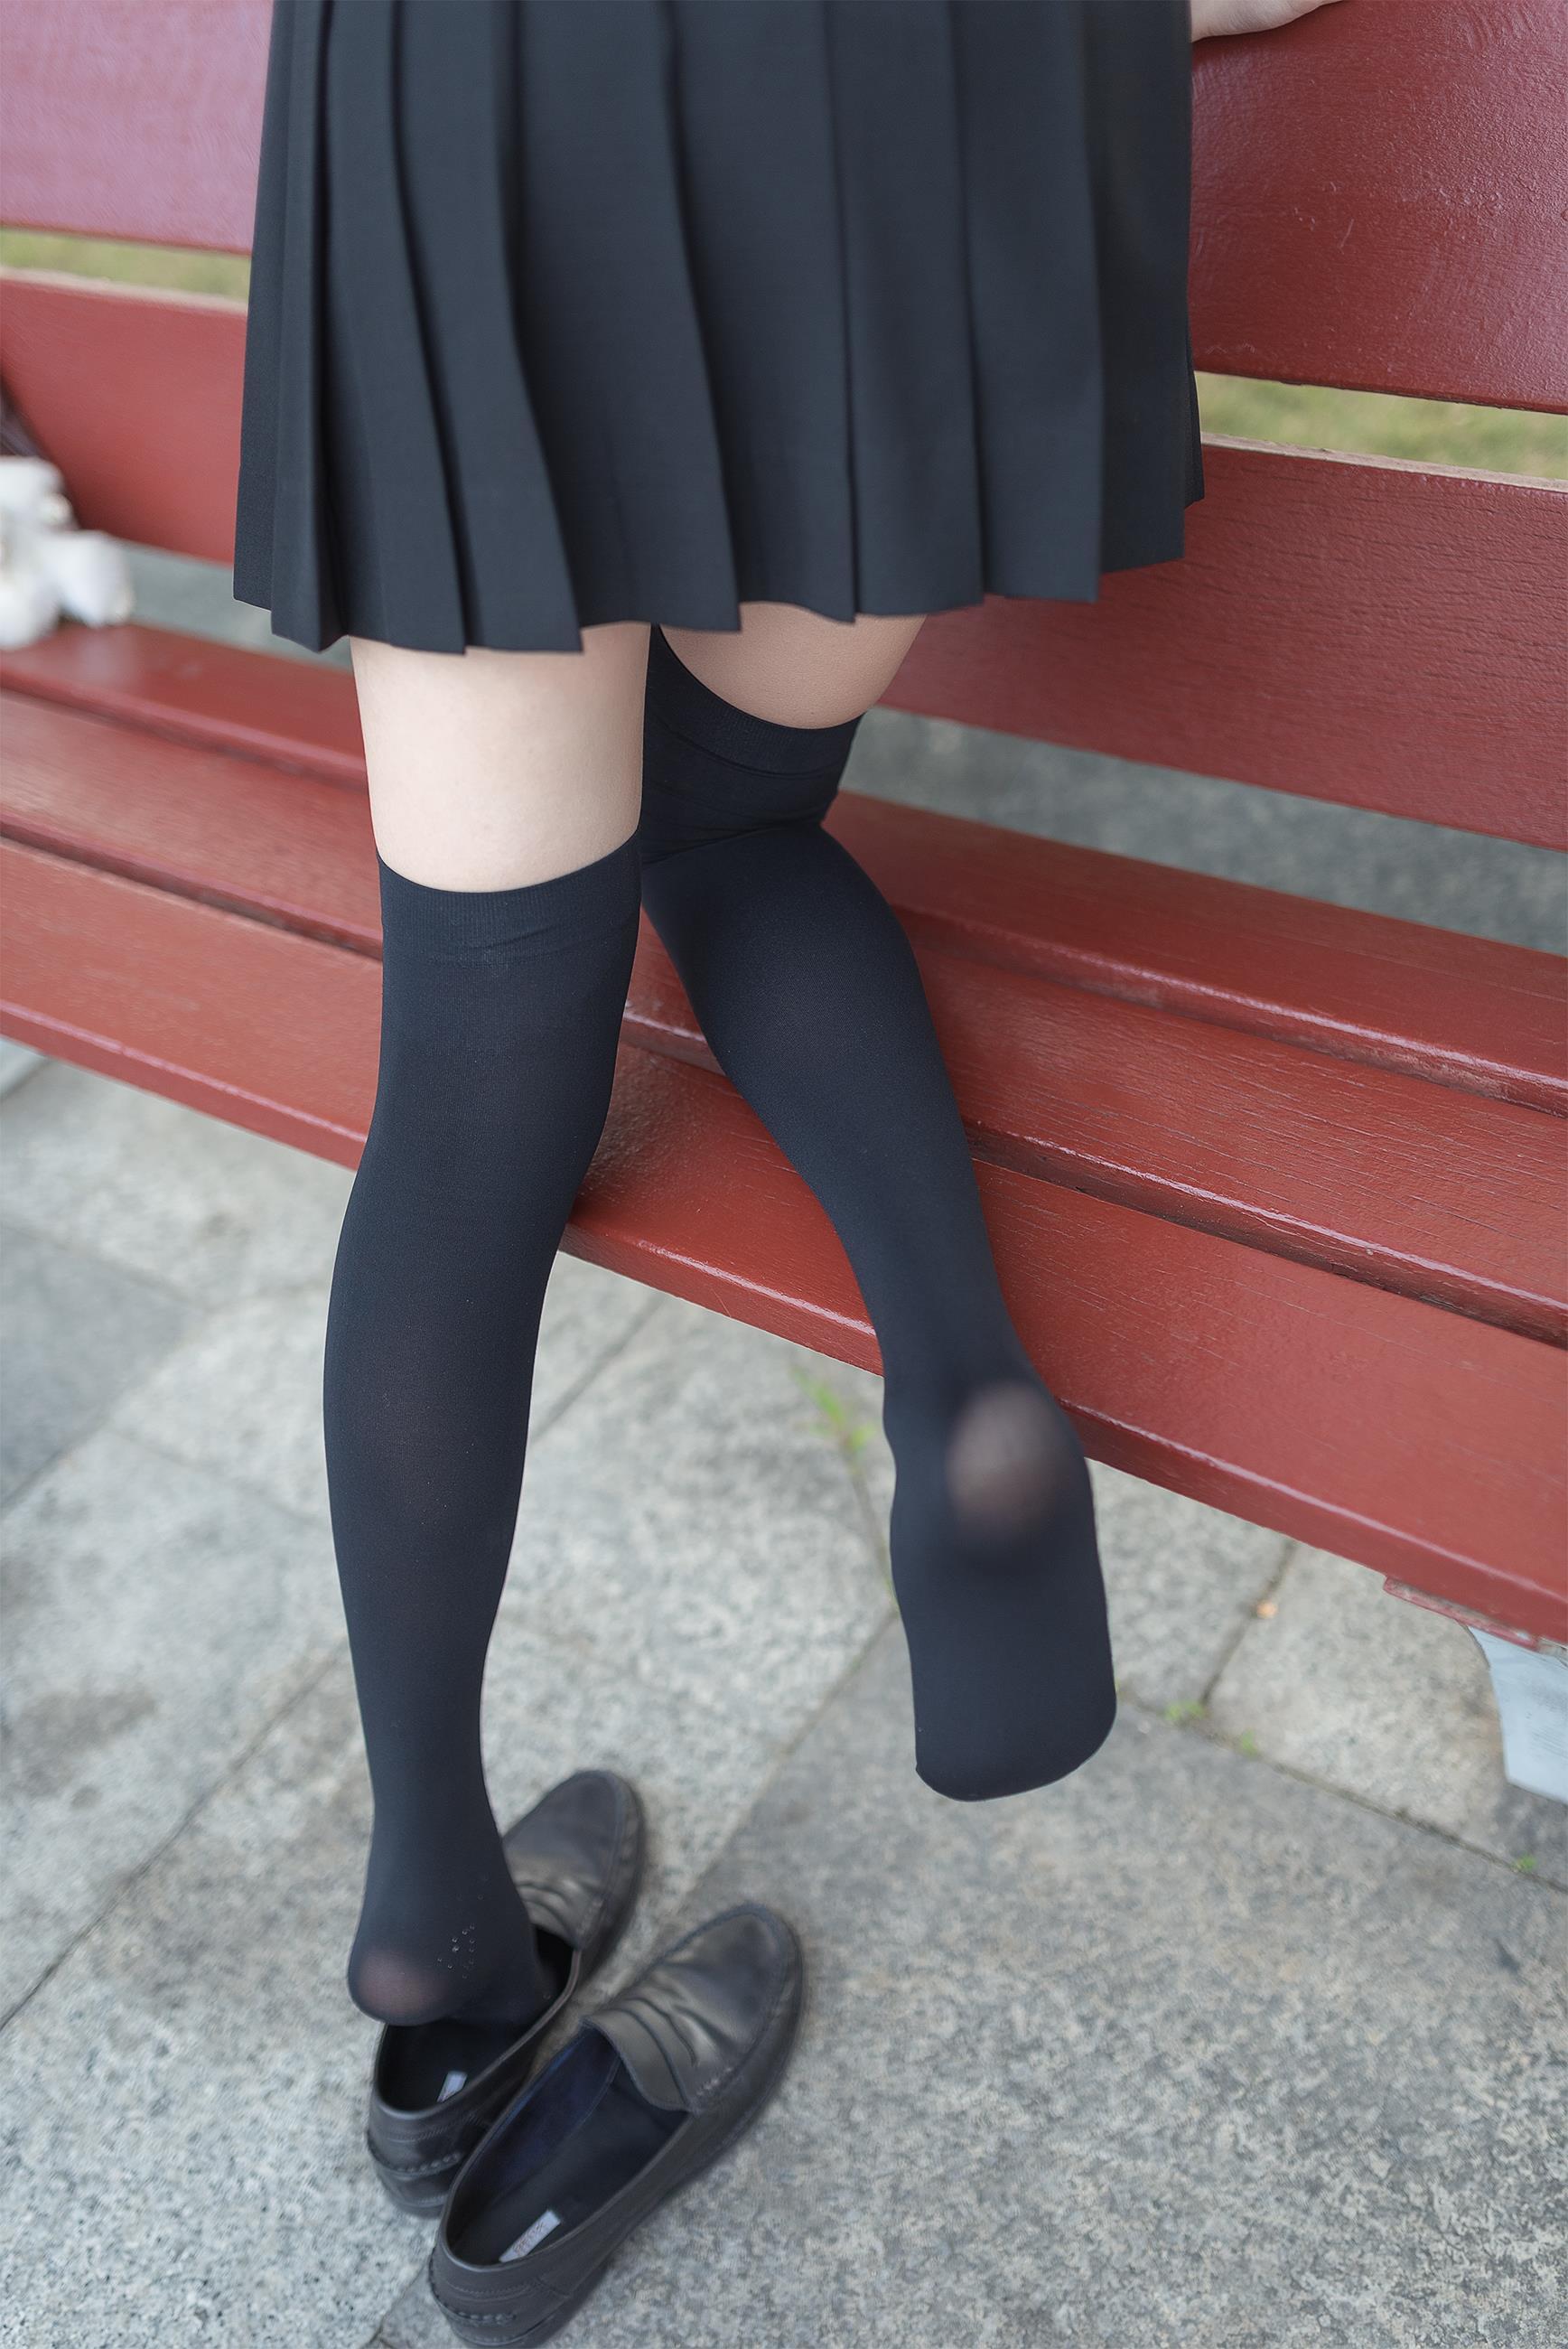 [风之领域]NO.003 清纯可爱小萝莉 高中女生制服与黑色短裙加黑色丝袜美腿性感私房写真集,